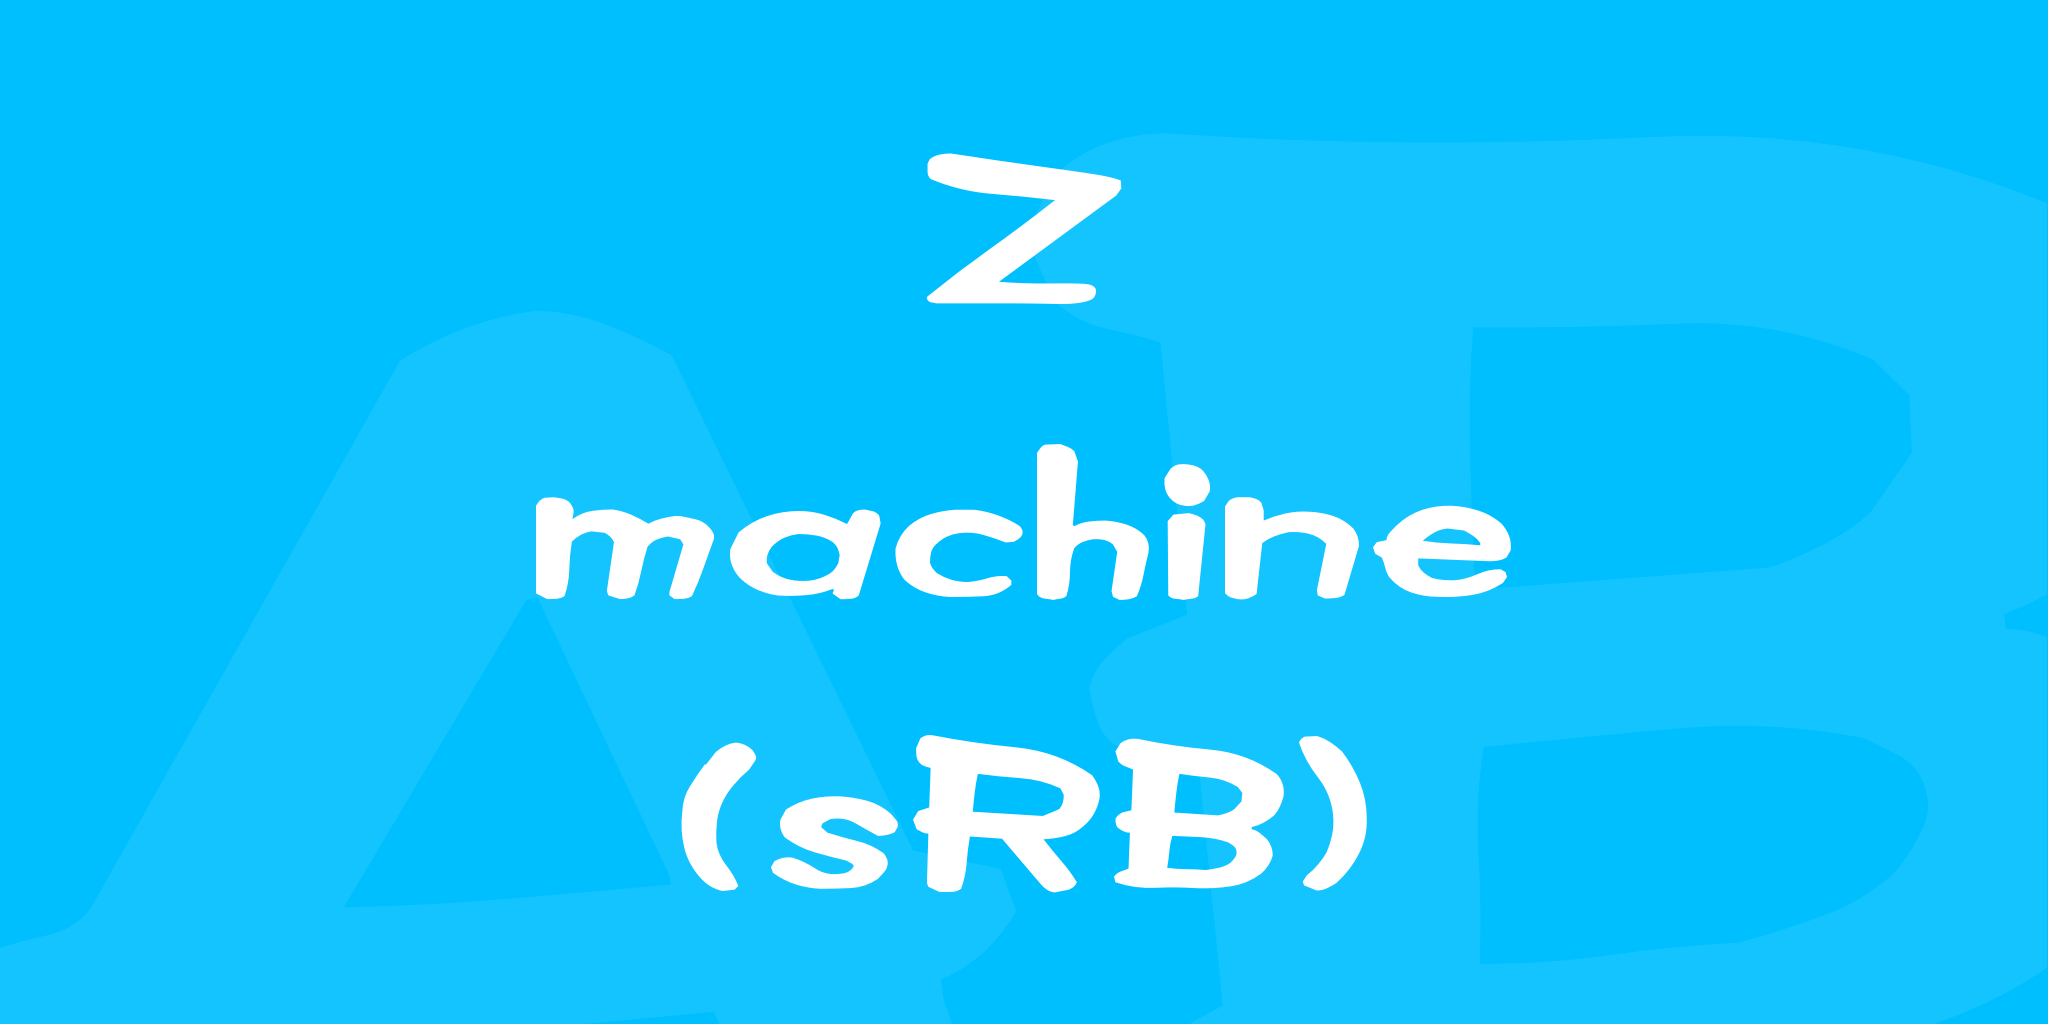 Z Machine Srb